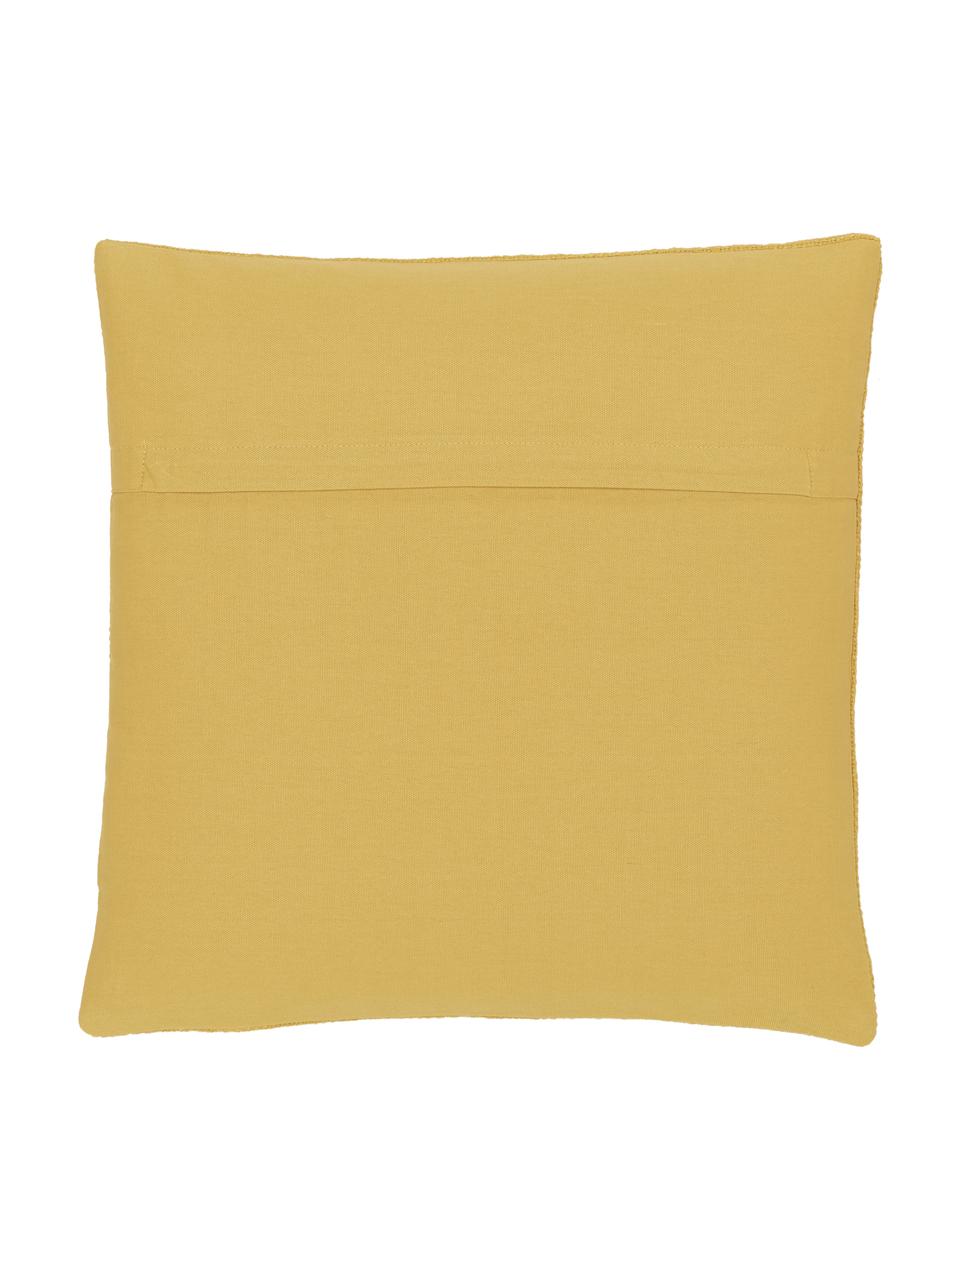 Federa arredo color giallo Anise, 100% cotone, Giallo, Larg. 45 x Lung. 45 cm